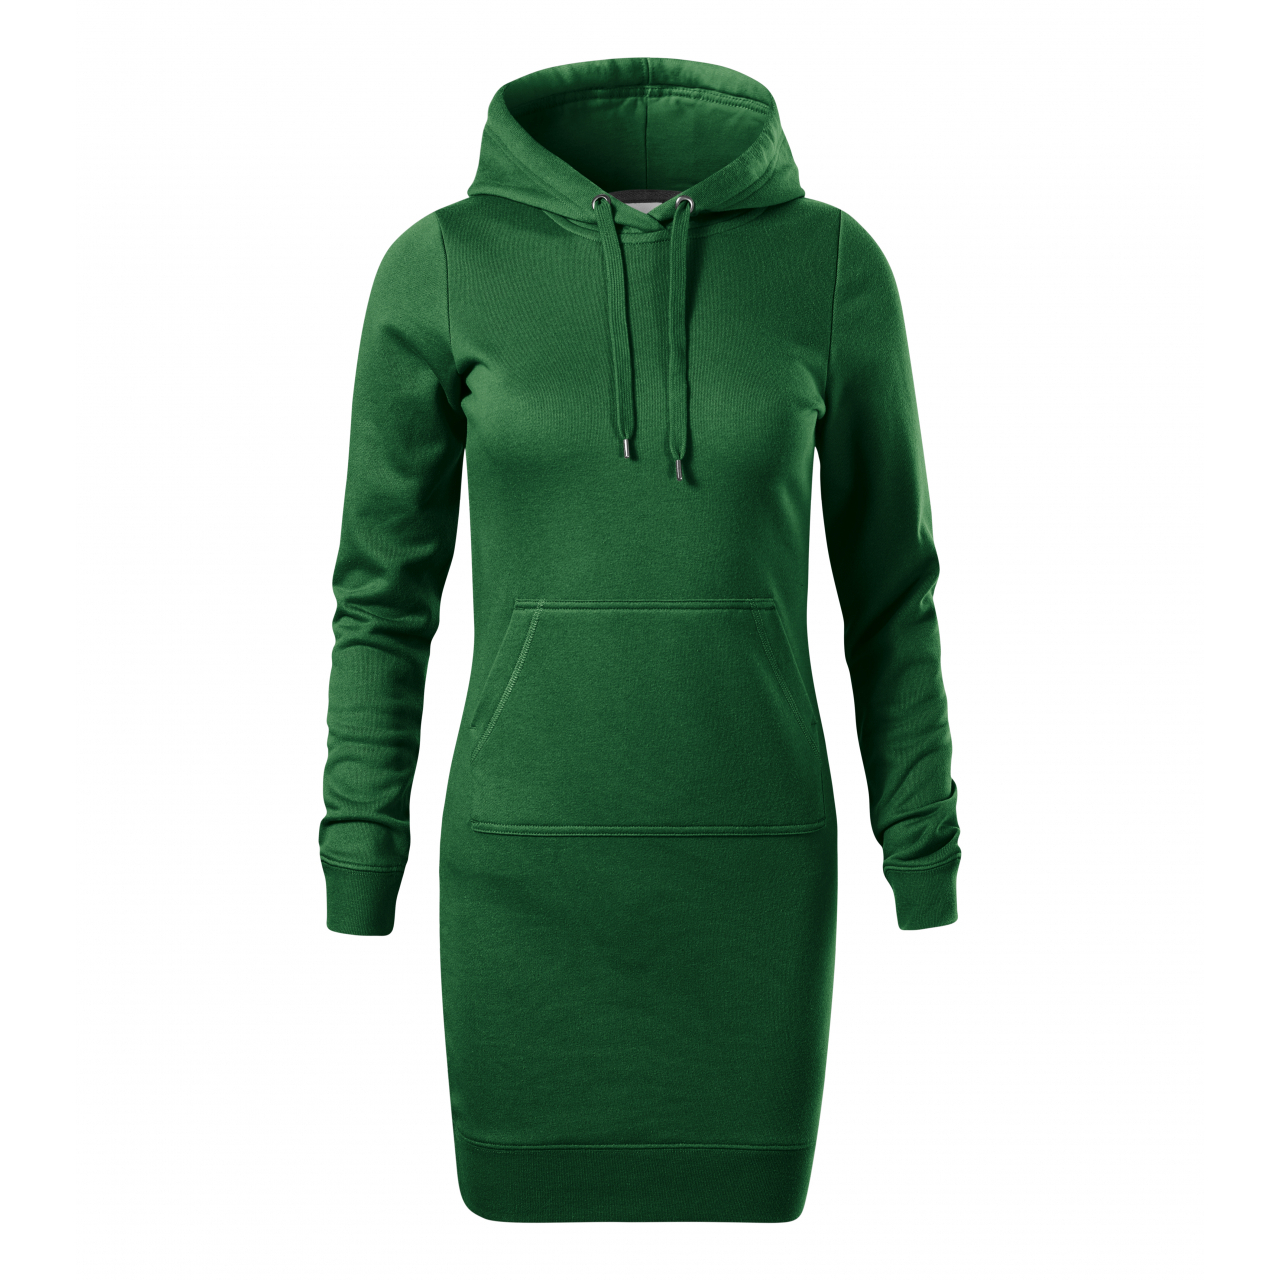 Šaty dámské Malfini Snap - tmavě zelené, M